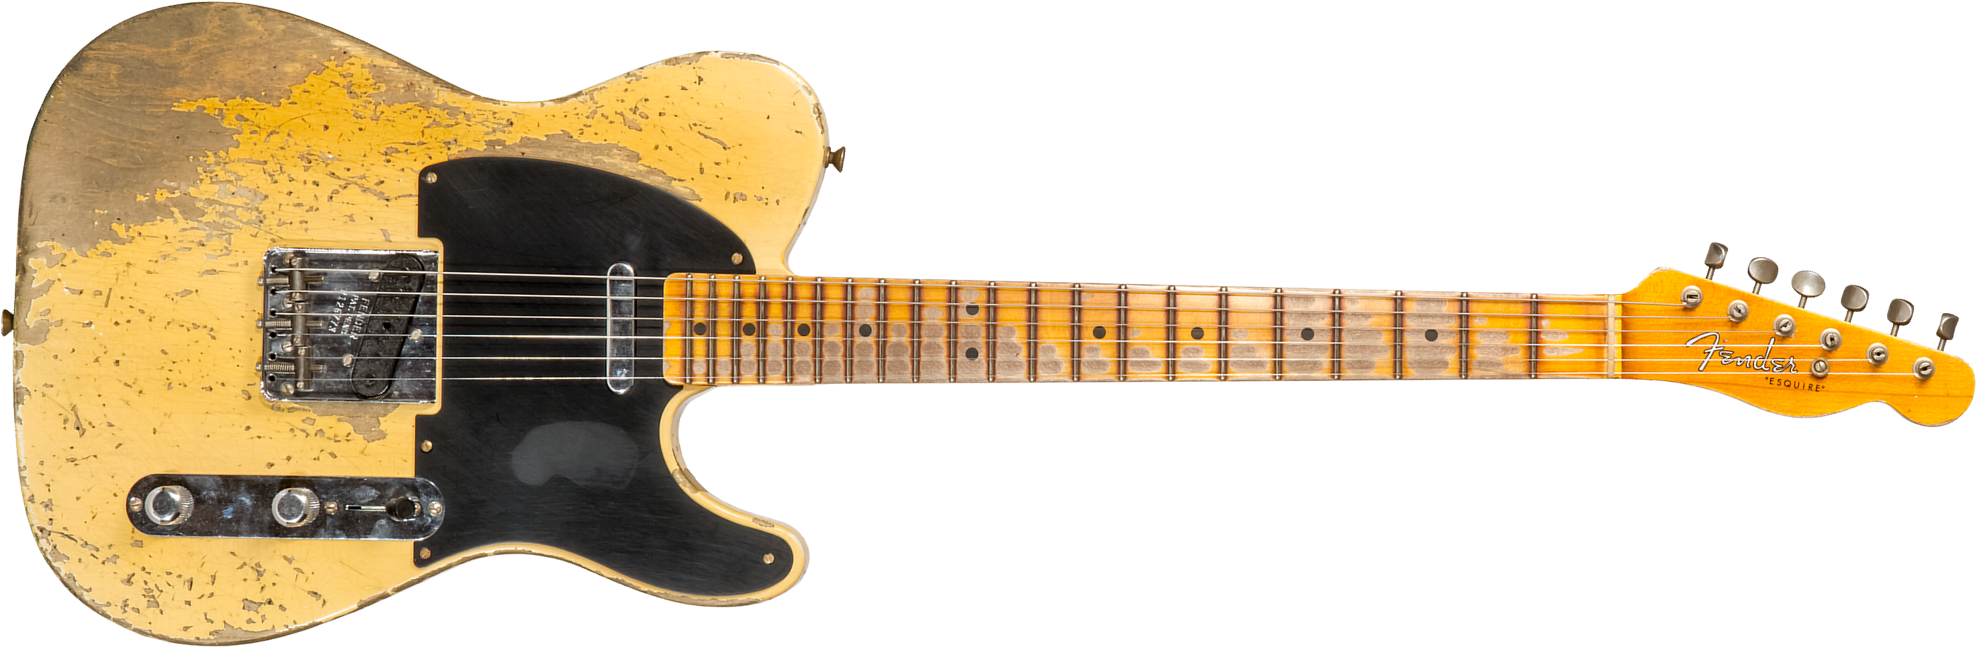 Fender Custom Shop Double Esquire/tele 1950 2s Ht Mn #r126773 - Super Heavy Relic Aged Nocaster Blonde - E-Gitarre in Teleform - Main picture